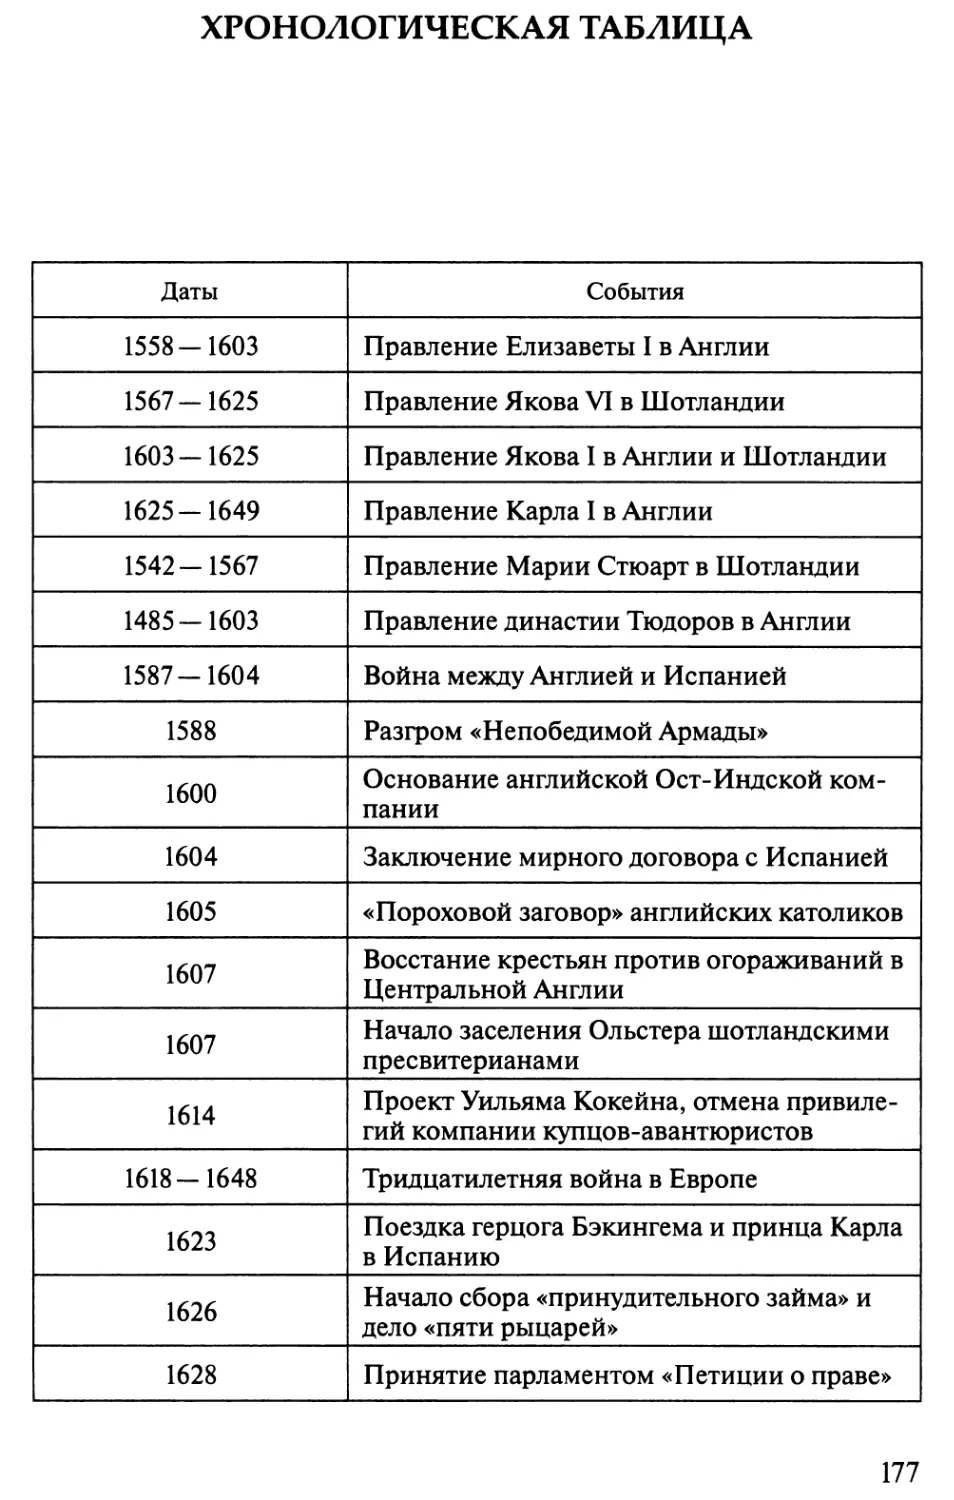 Хронологическая таблица